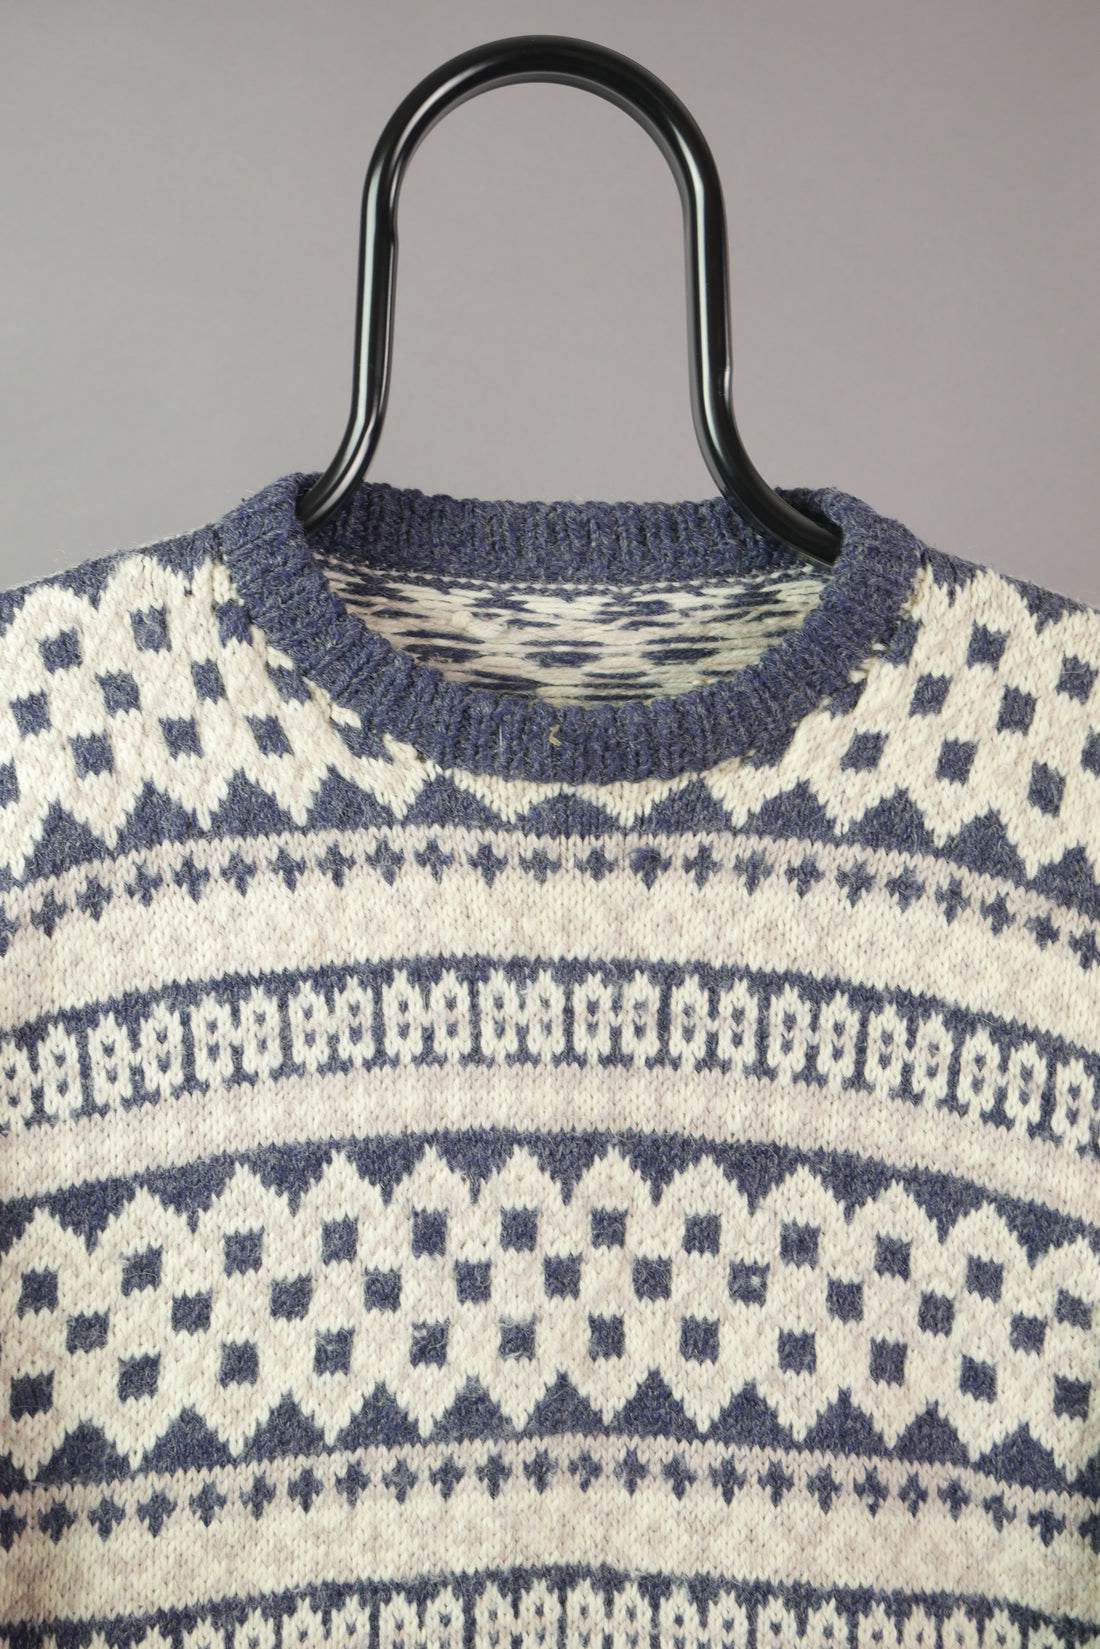 The Wool Patterned Sweatshirt (S)